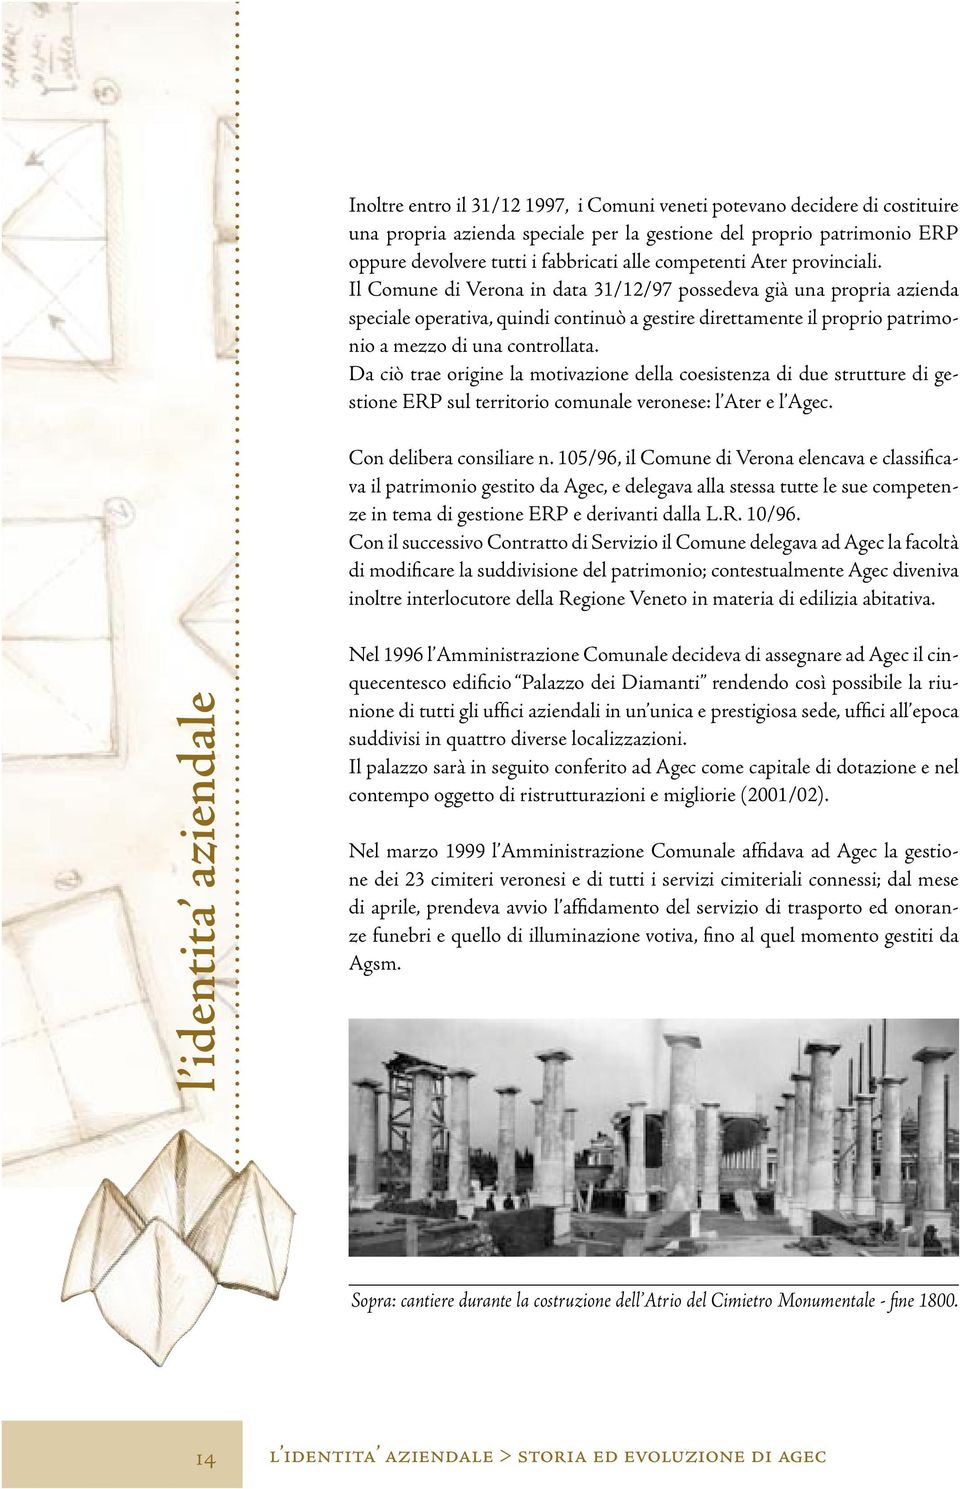 Il Comune di Verona in data 31/12/97 possedeva già una propria azienda speciale operativa, quindi continuò a gestire direttamente il proprio patrimonio a mezzo di una controllata.